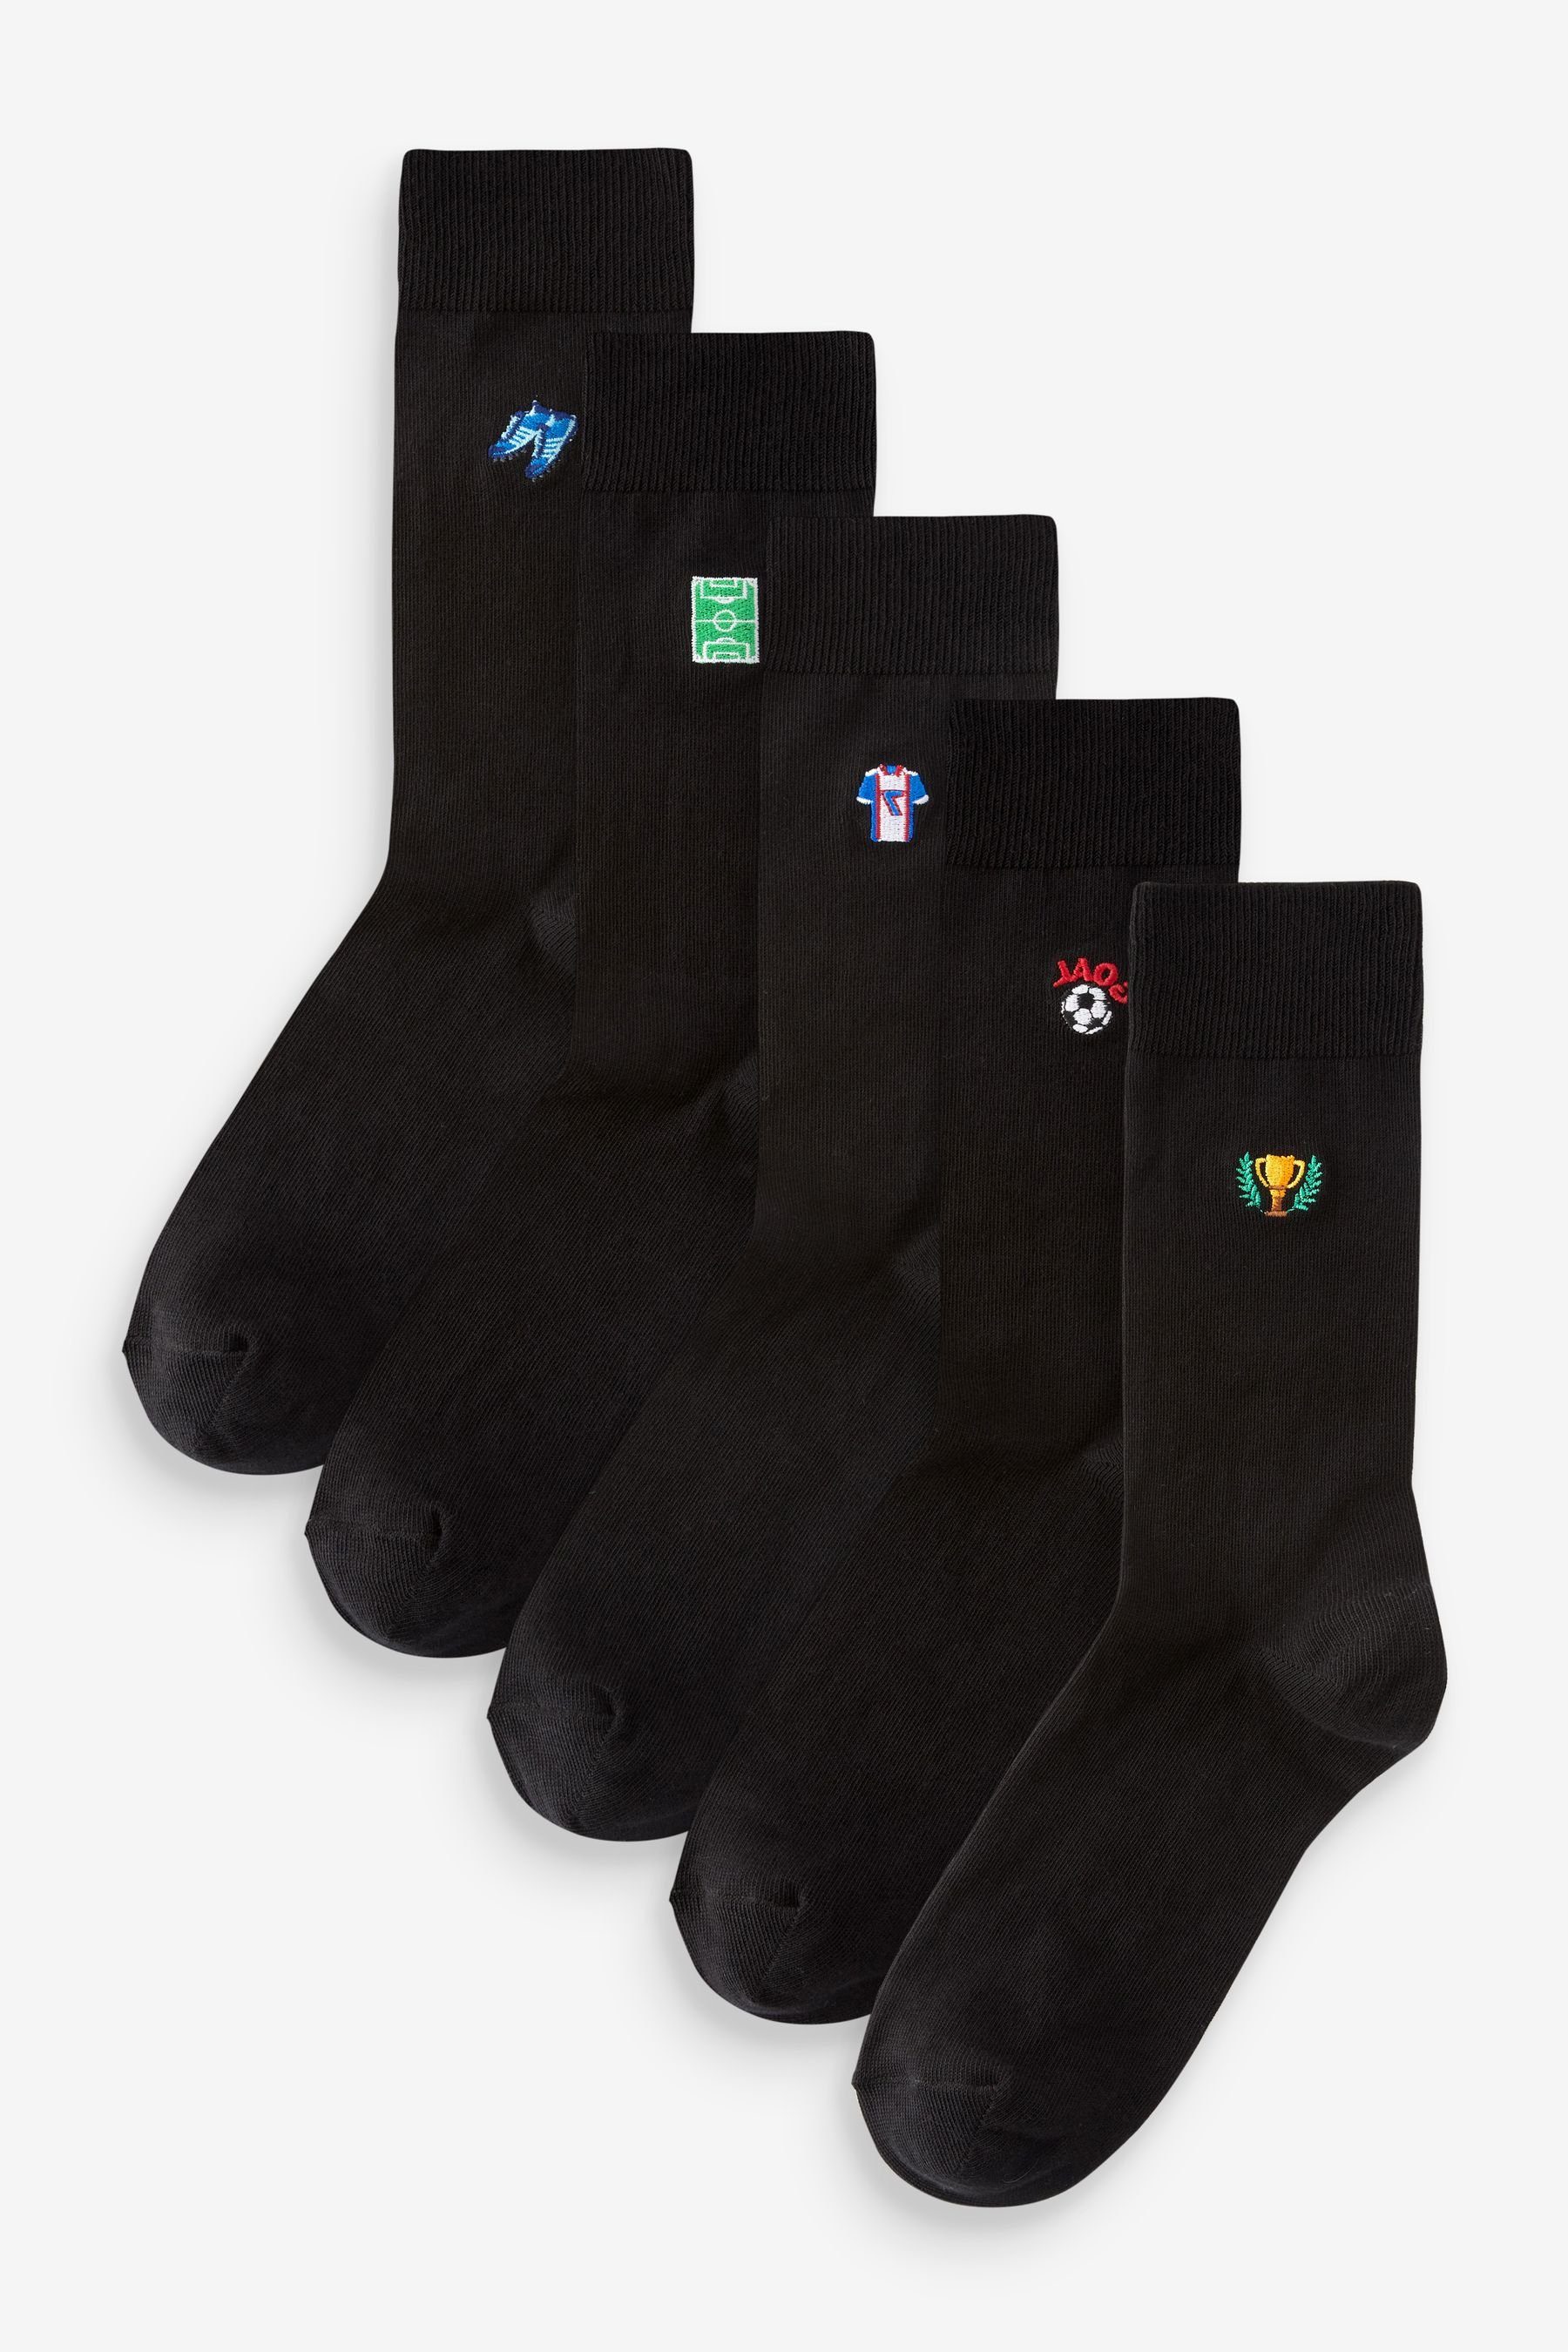 Next Socken 5er-Pack (5-Paar) Stickerei Football mit Kurzsocken Black